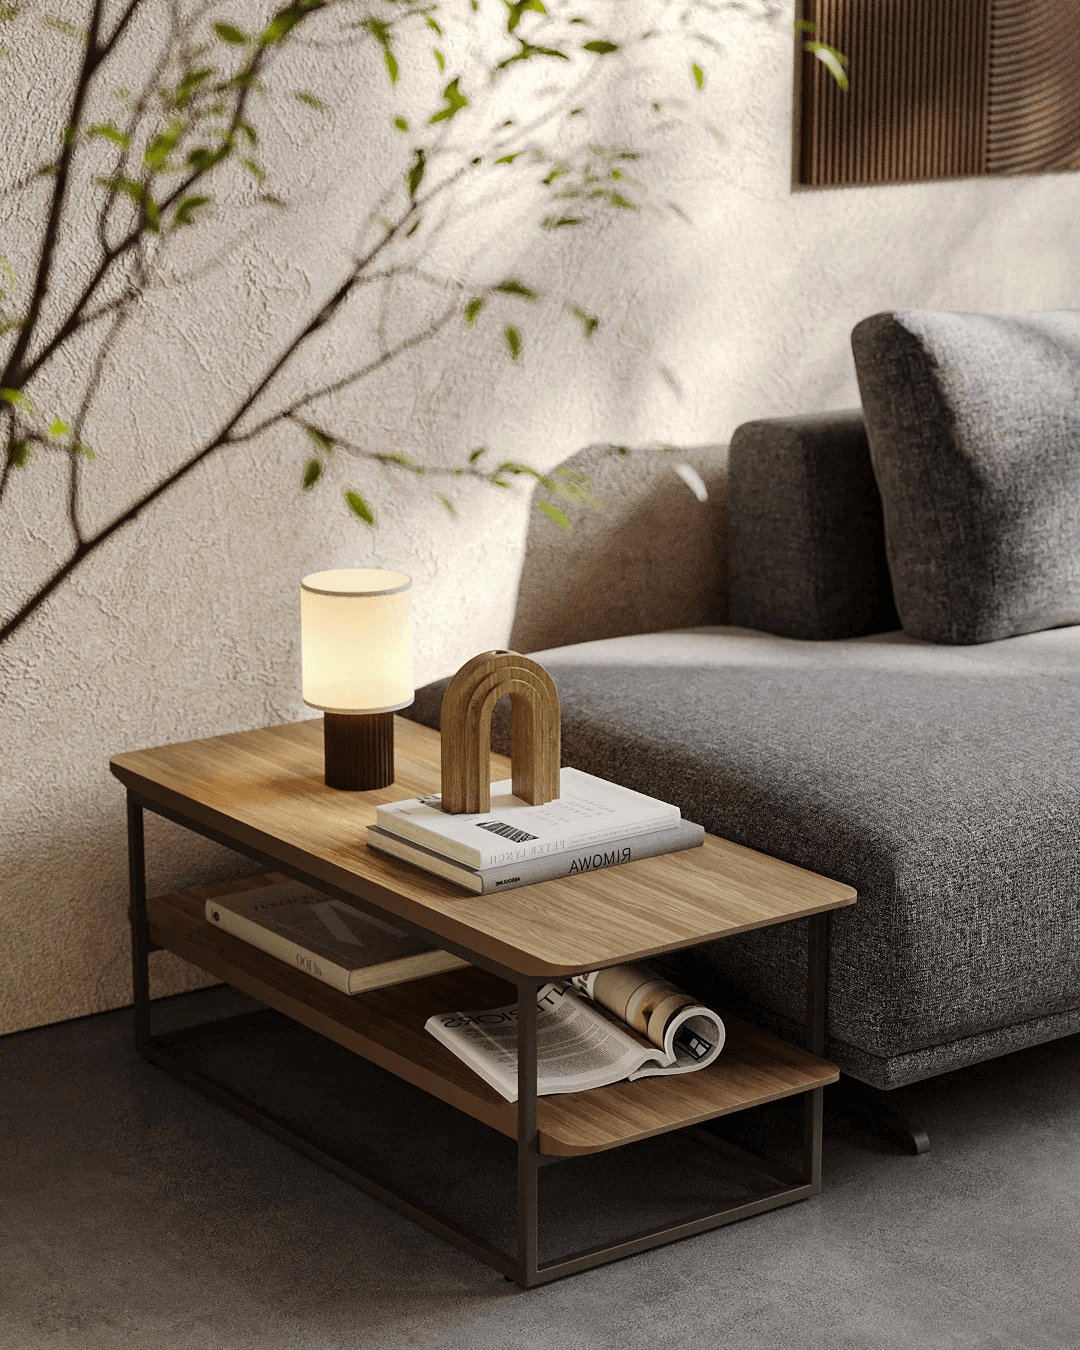 Современный дизайн для маленькой квартиры: делаем компактное стильным: фото NaN